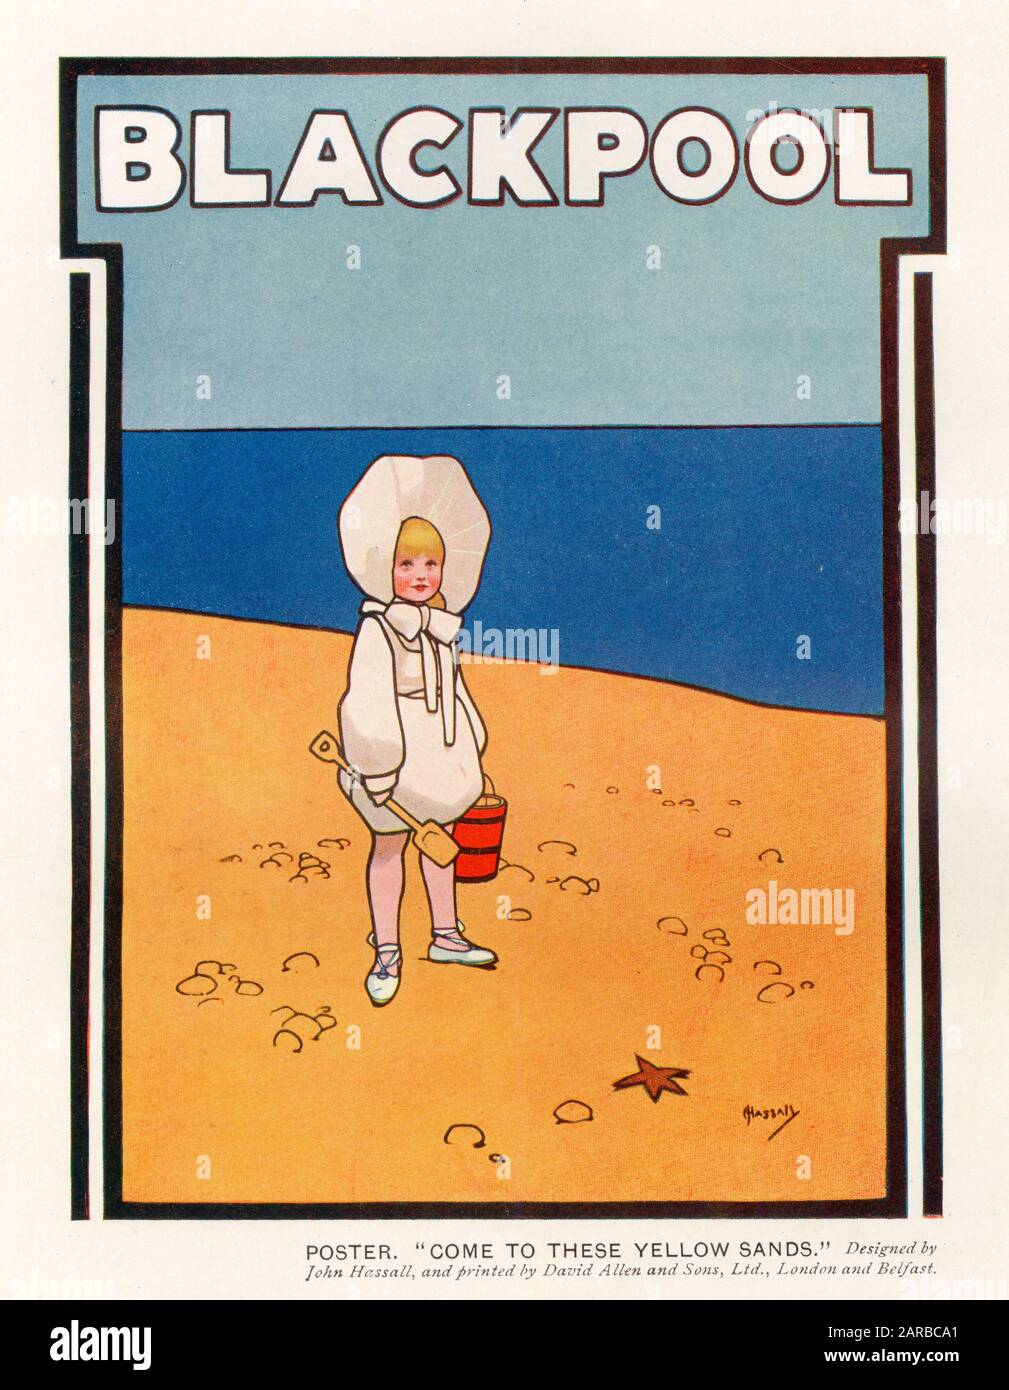 Un cartel que promueve Blackpool, pero omitiendo cualquiera de sus atracciones y mostrando en lugar un solo niño en una playa desierta. Entonces, ¿por qué ir allí? Fecha: Principios del siglo XX Foto de stock